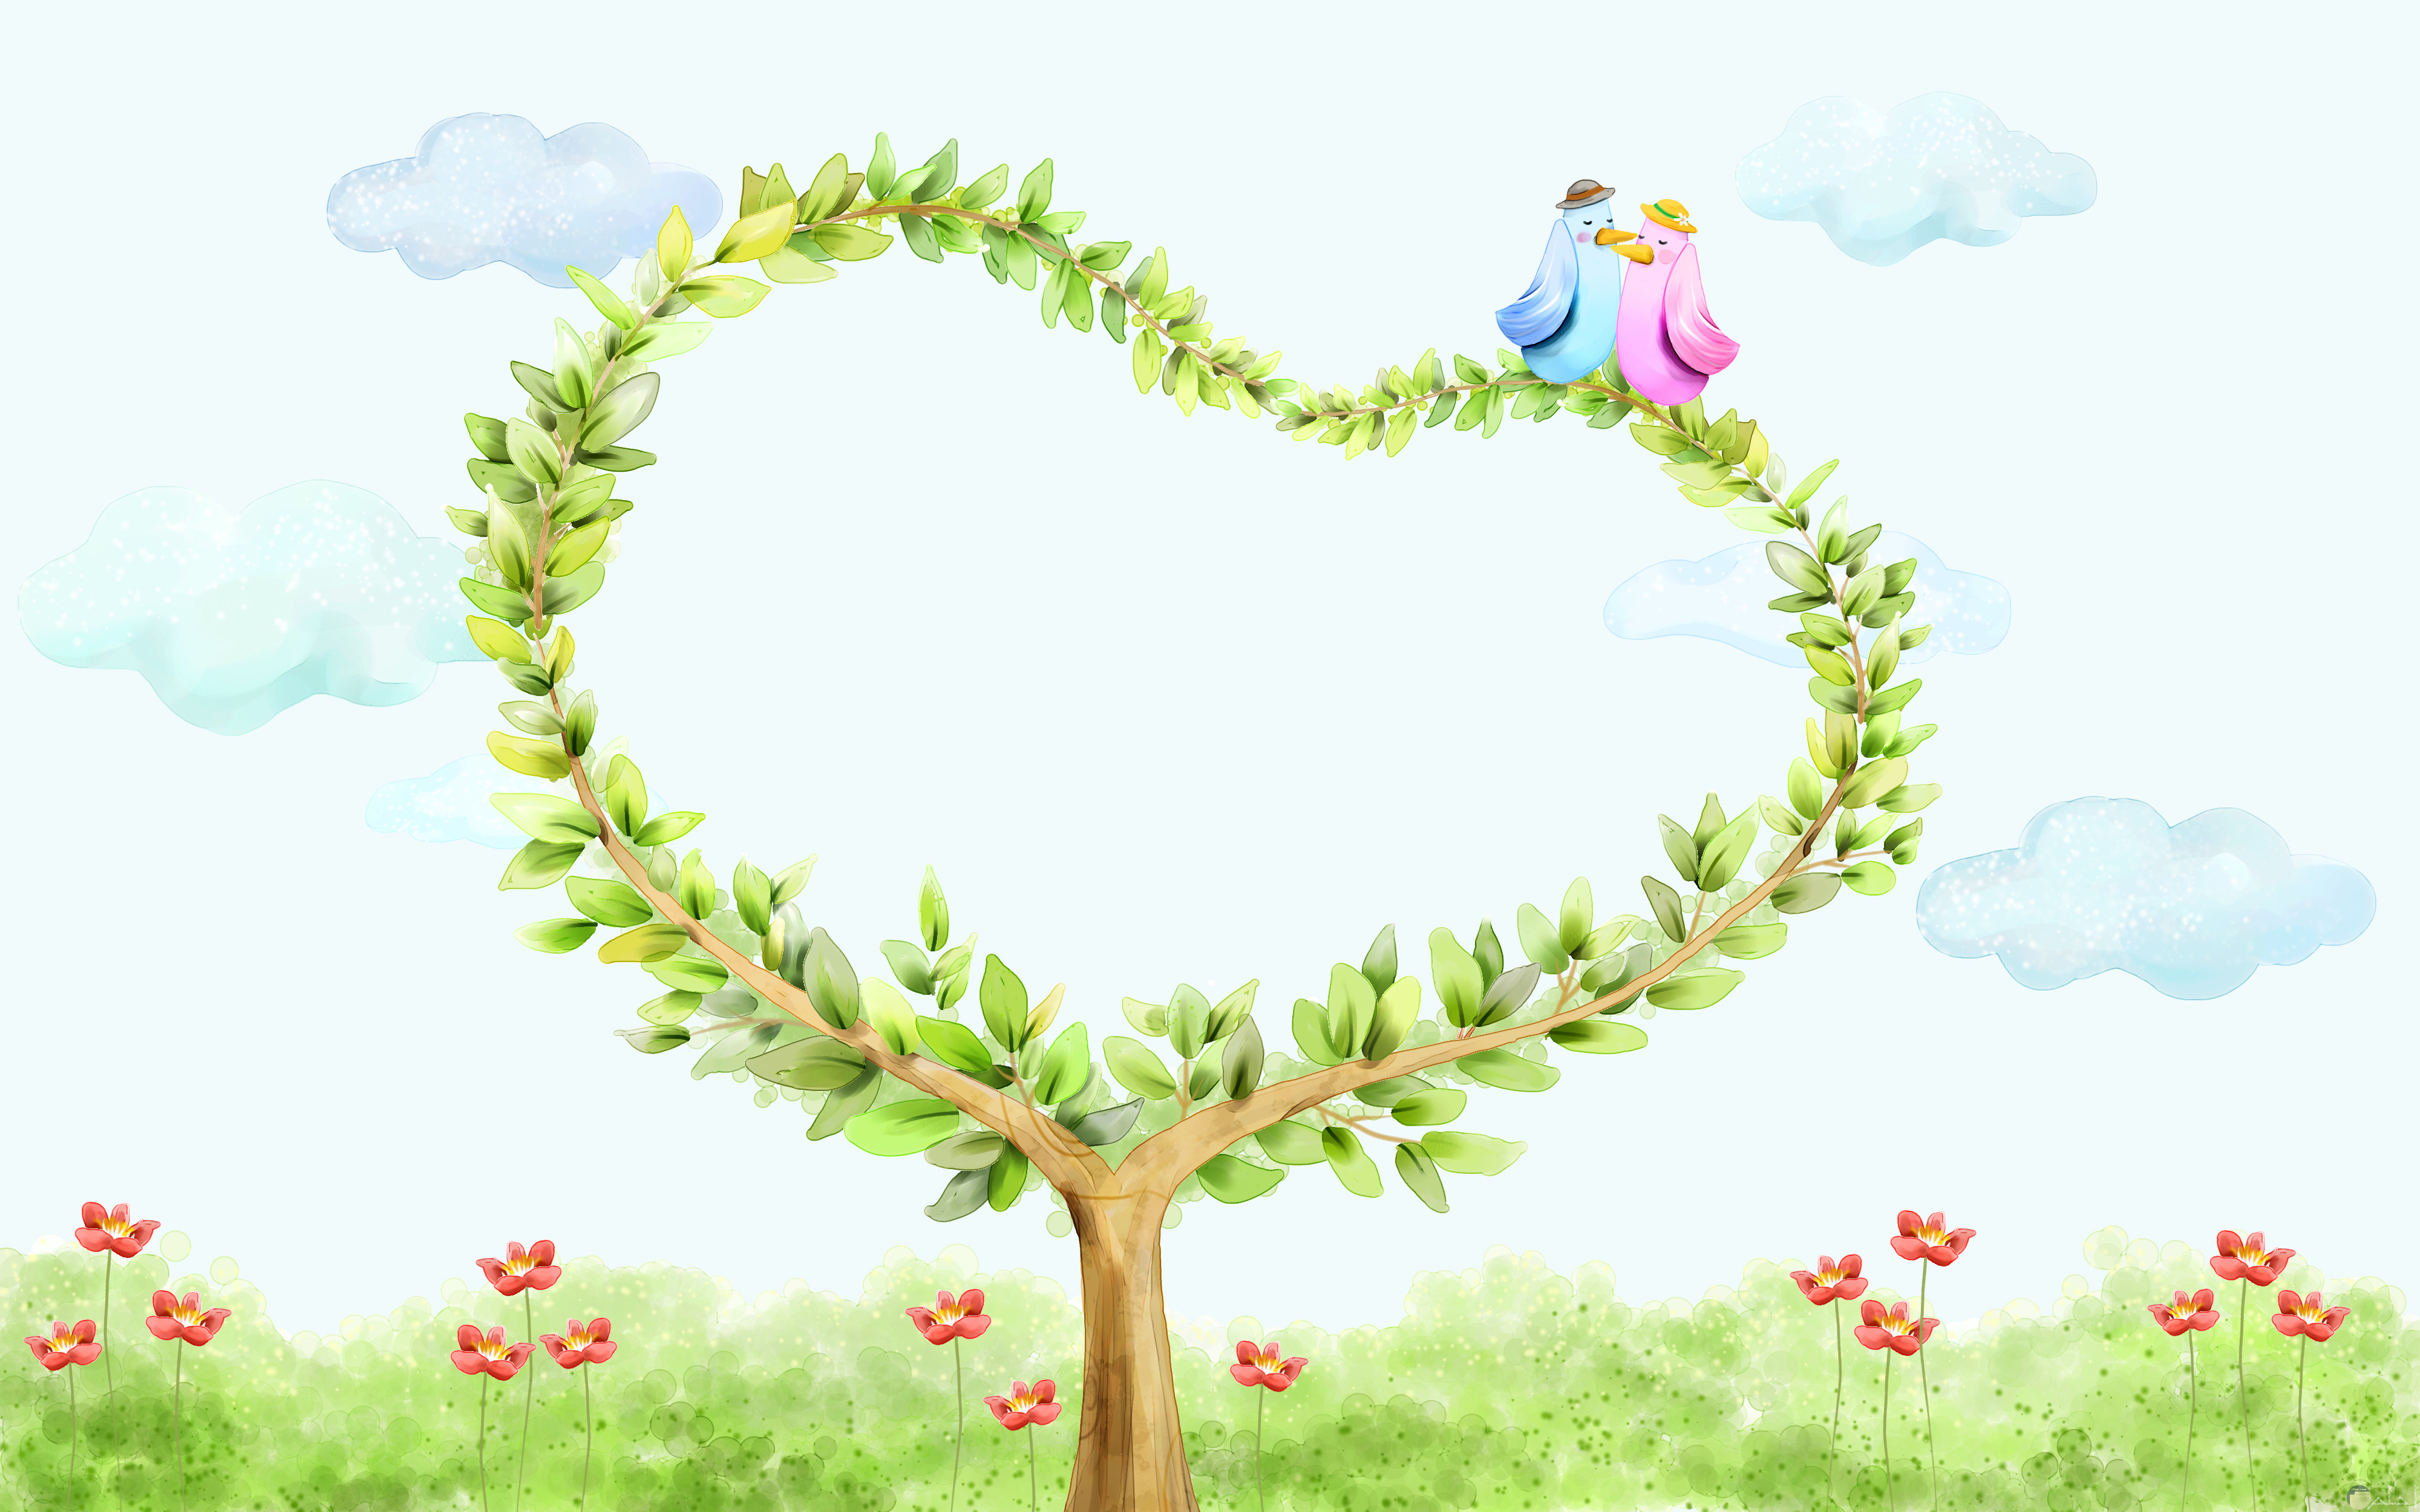 قلب اخضر مرسوم في صورة كرتونية جميلة ورومانسية